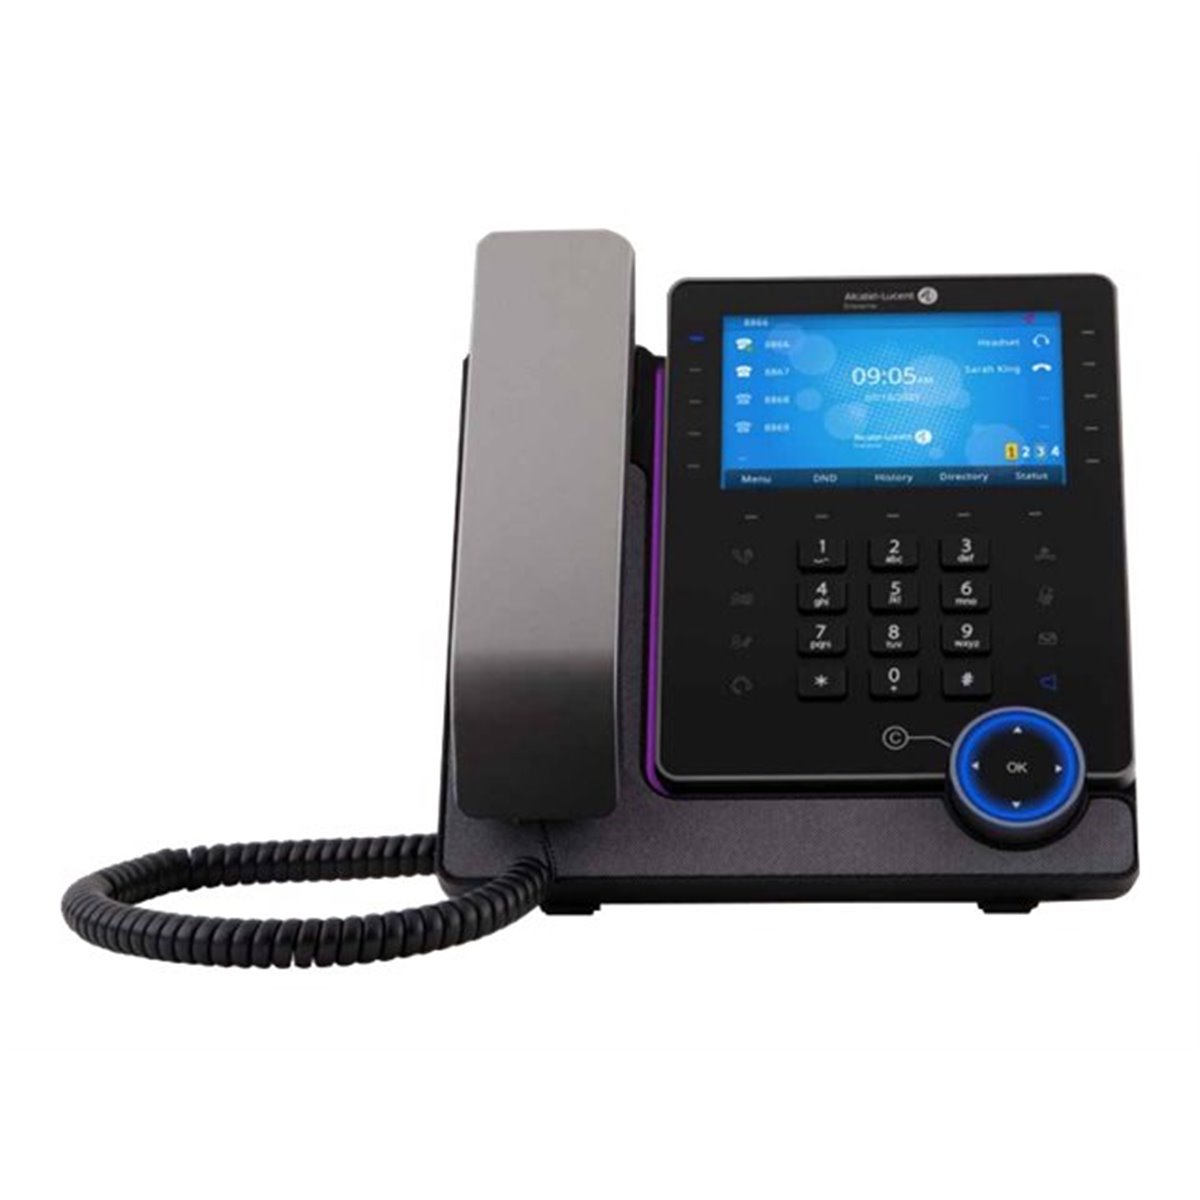 Alcatel Lucent Enterprise M8 DeskPhone - VoIP-Tele - Voice-Over-IP - Voice-Over-IP